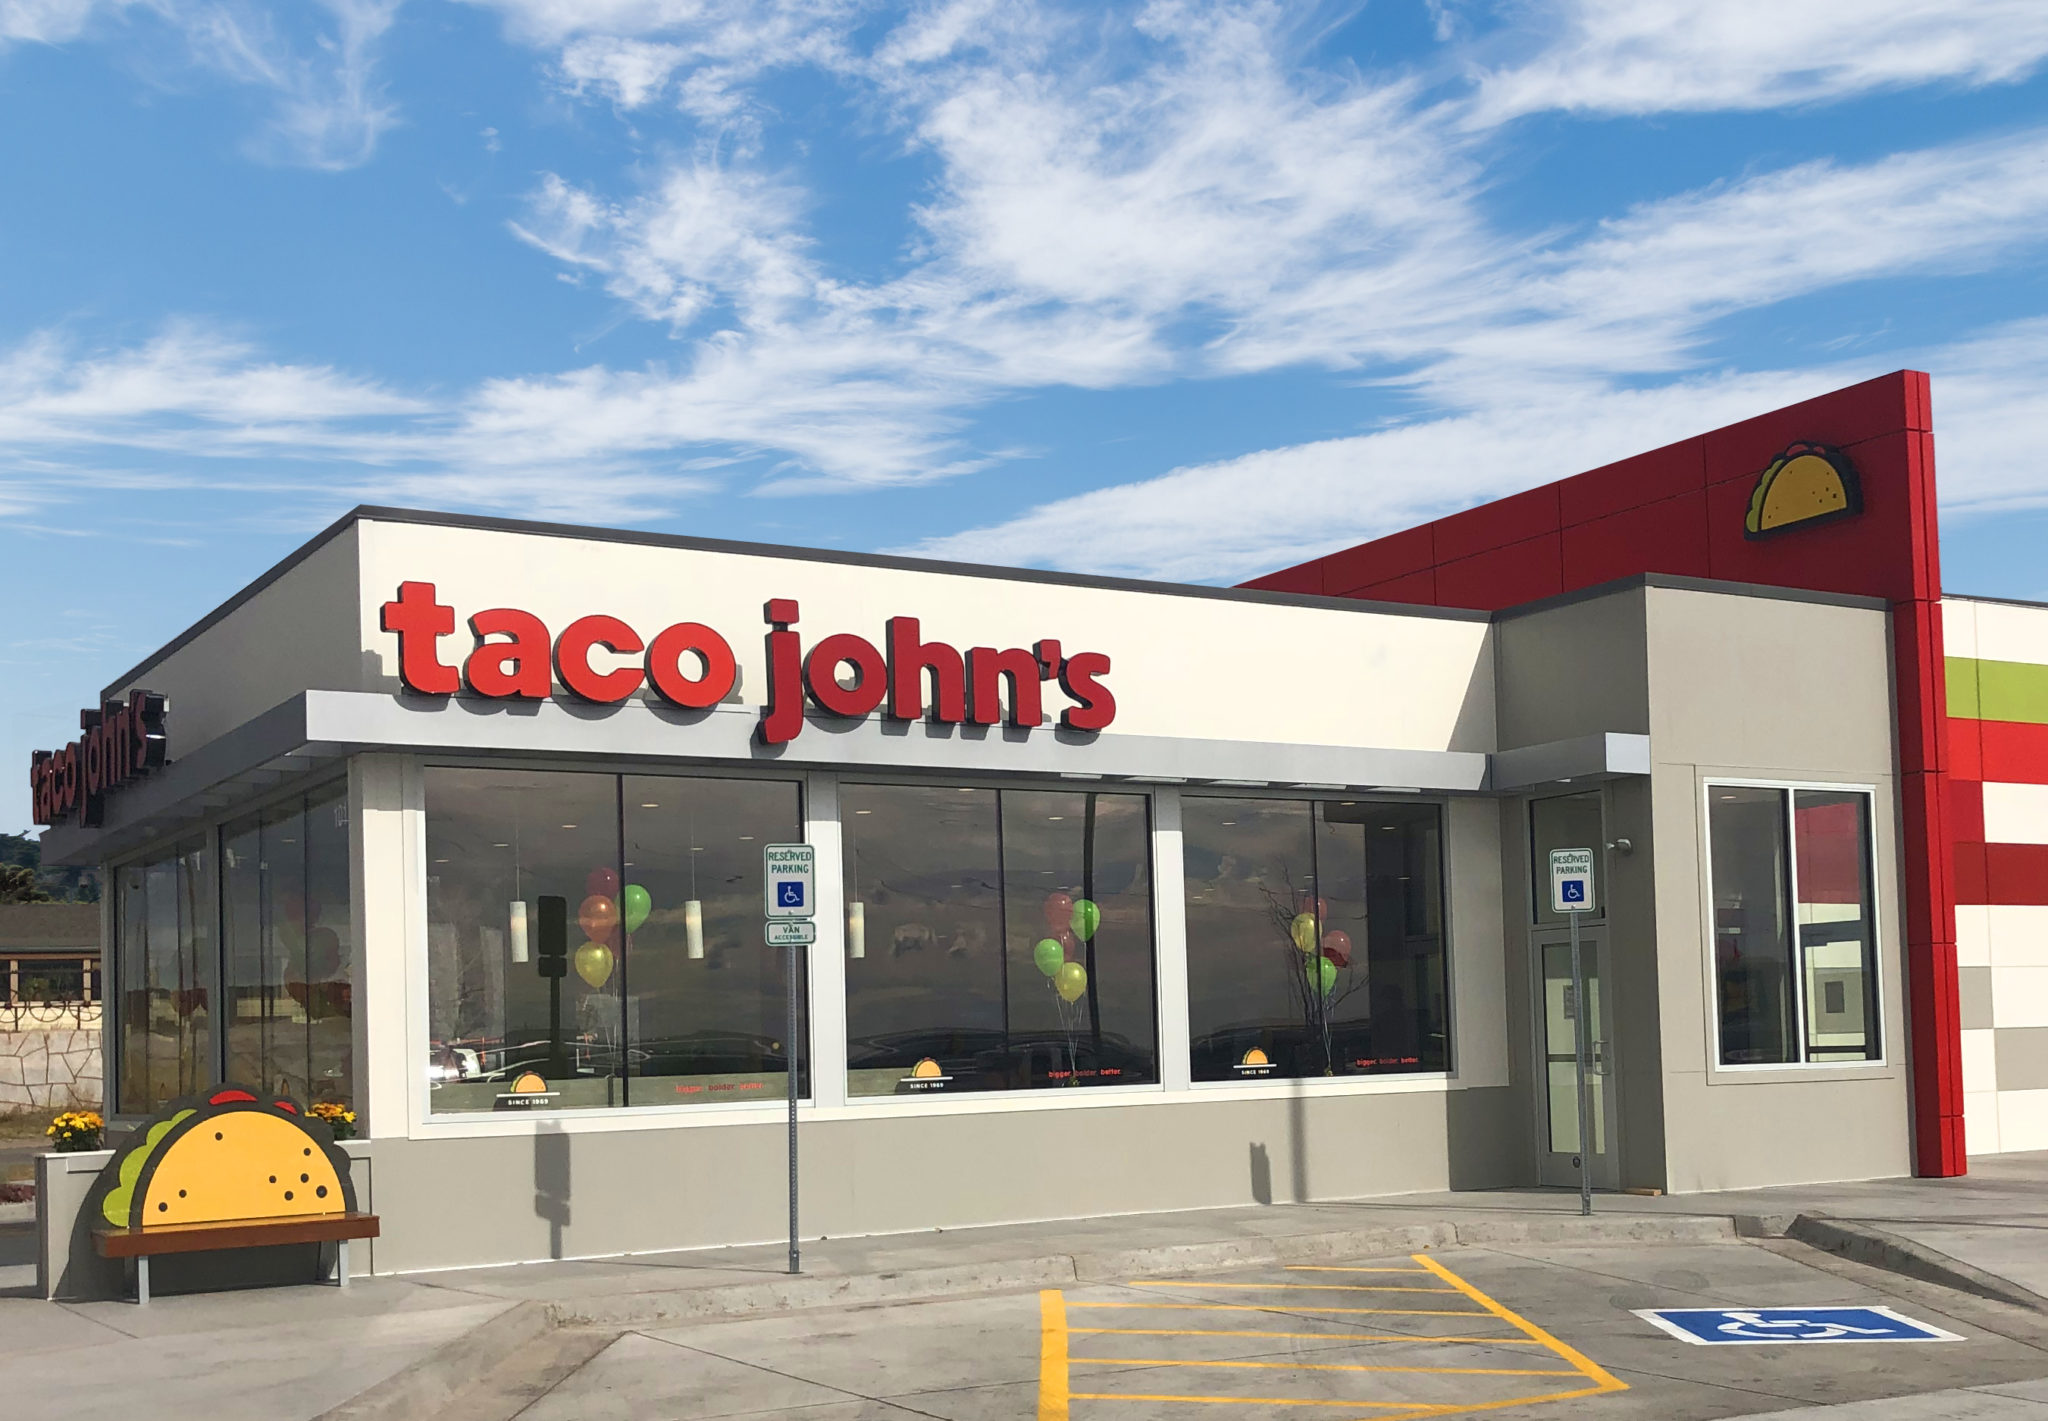 Taco John has 50 years of innovative franchise experience.